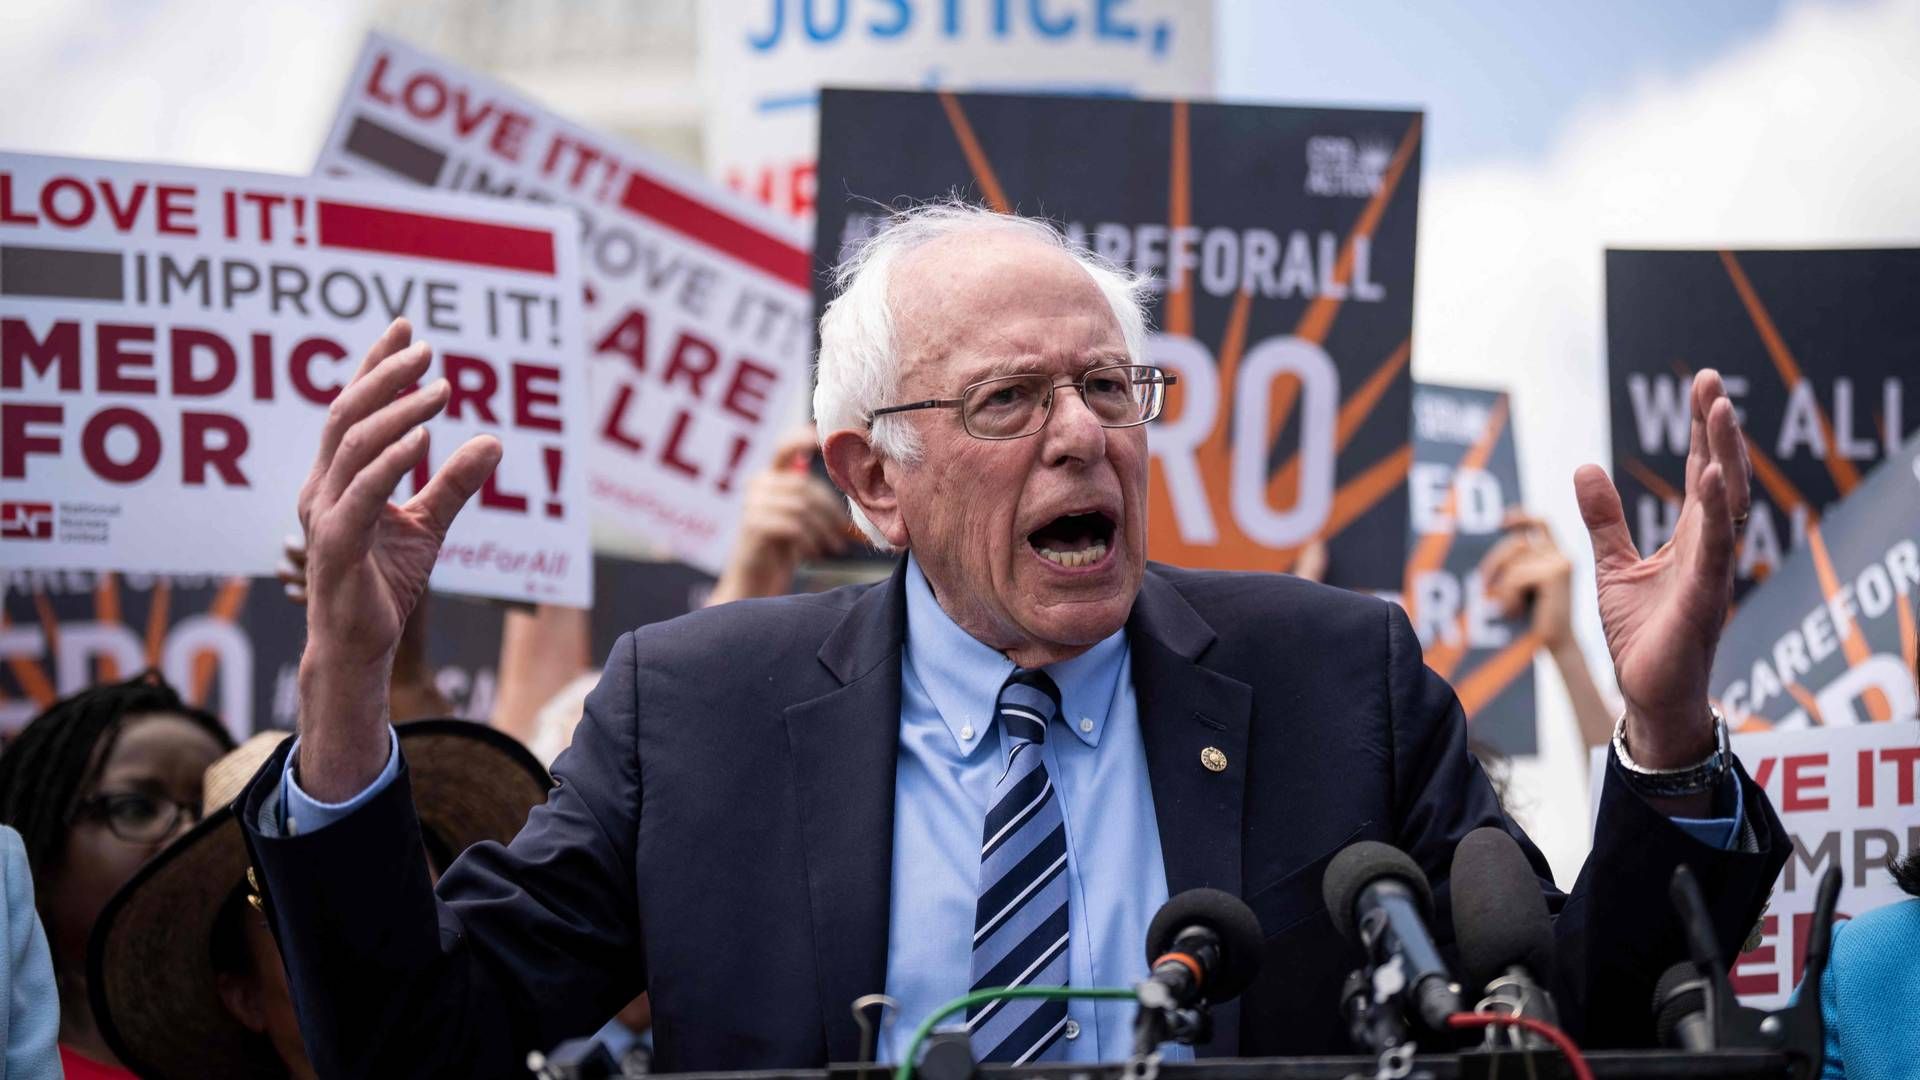 Den amerikanske senator Bernie Sanders er formand for senatets sundhedskomité HELP, hvor han er fokuseret på at nedbringe medicinpriserne i USA. | Foto: Drew Angerer